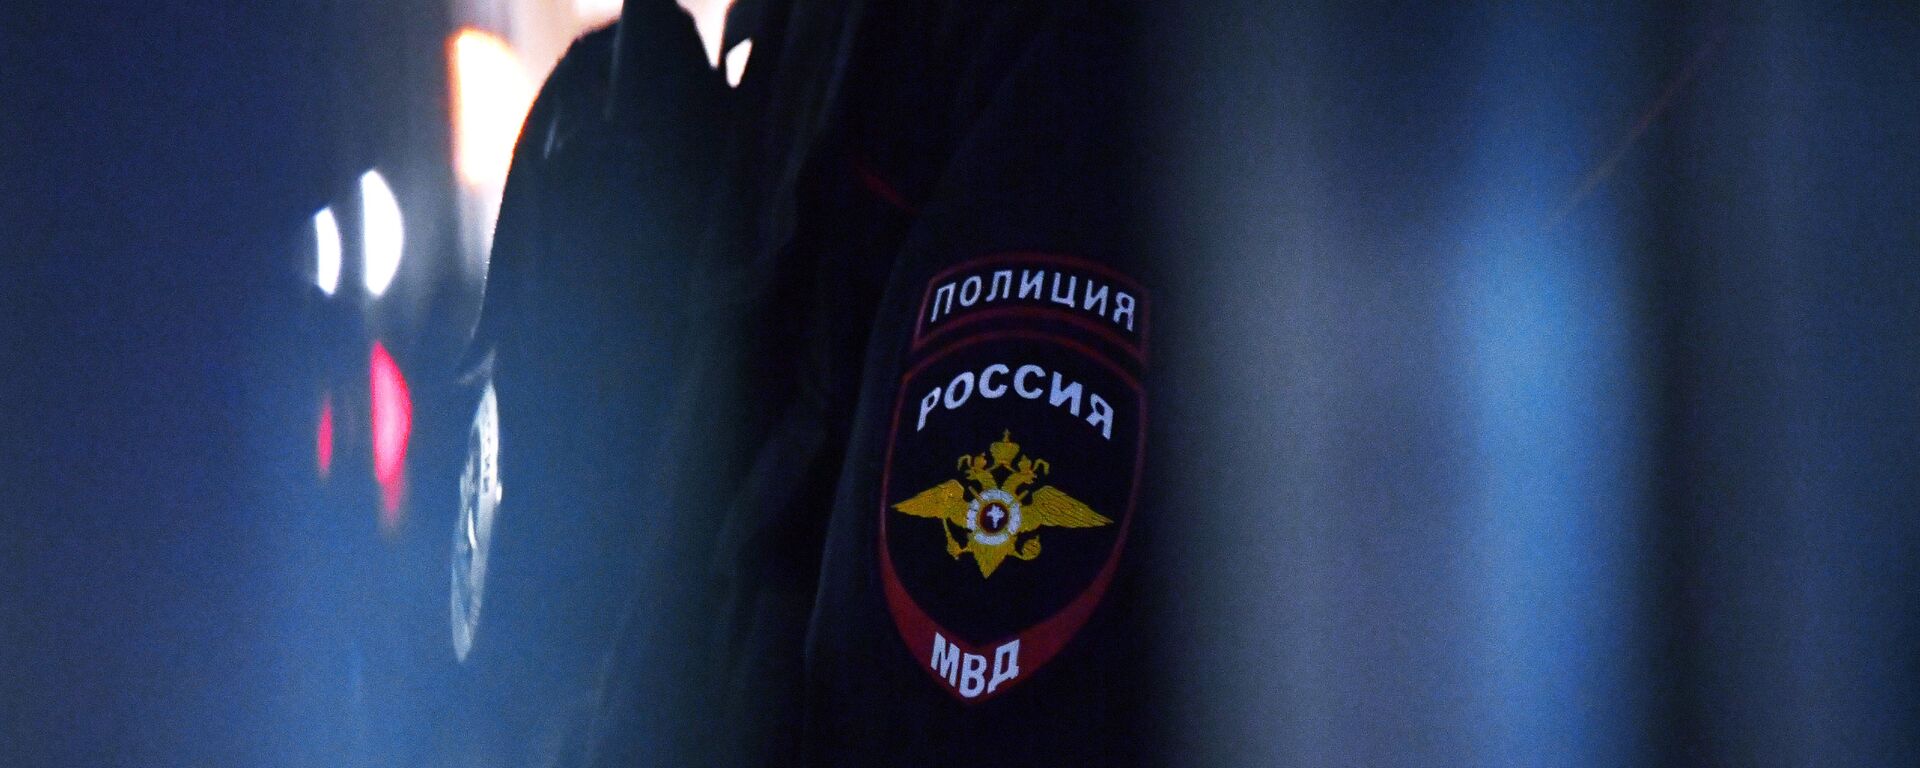 Нашивка на рукаве сотрудника полиции в России, архивное фото - Sputnik Ўзбекистон, 1920, 21.08.2021